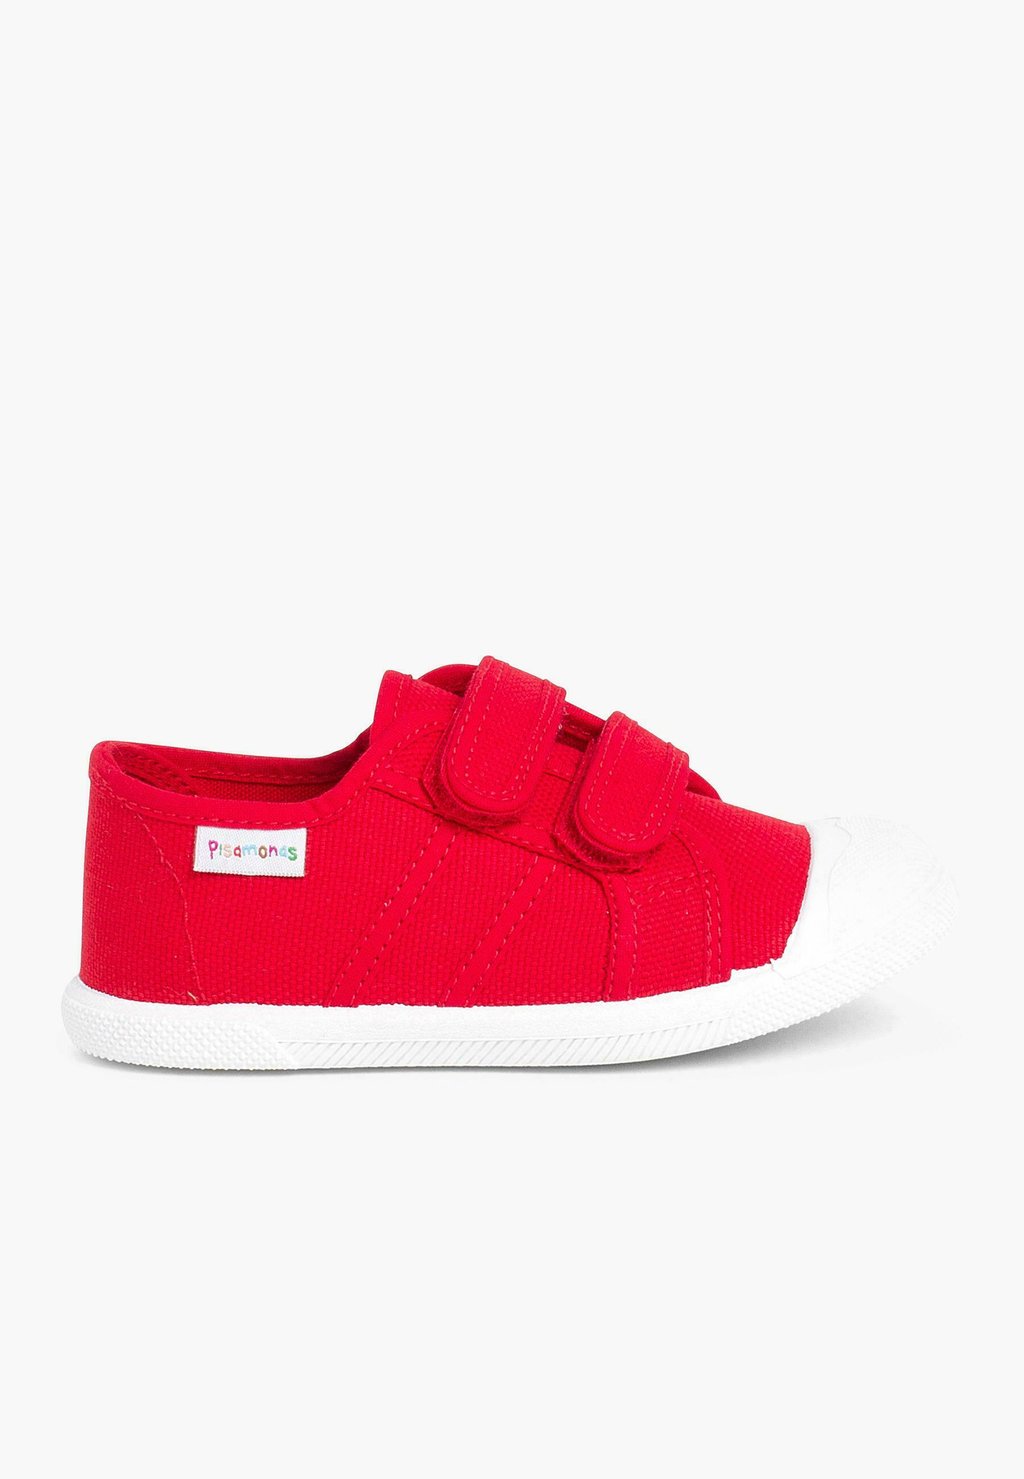 цена Первая обувь для ходьбы Pisamonas, цвет rojo